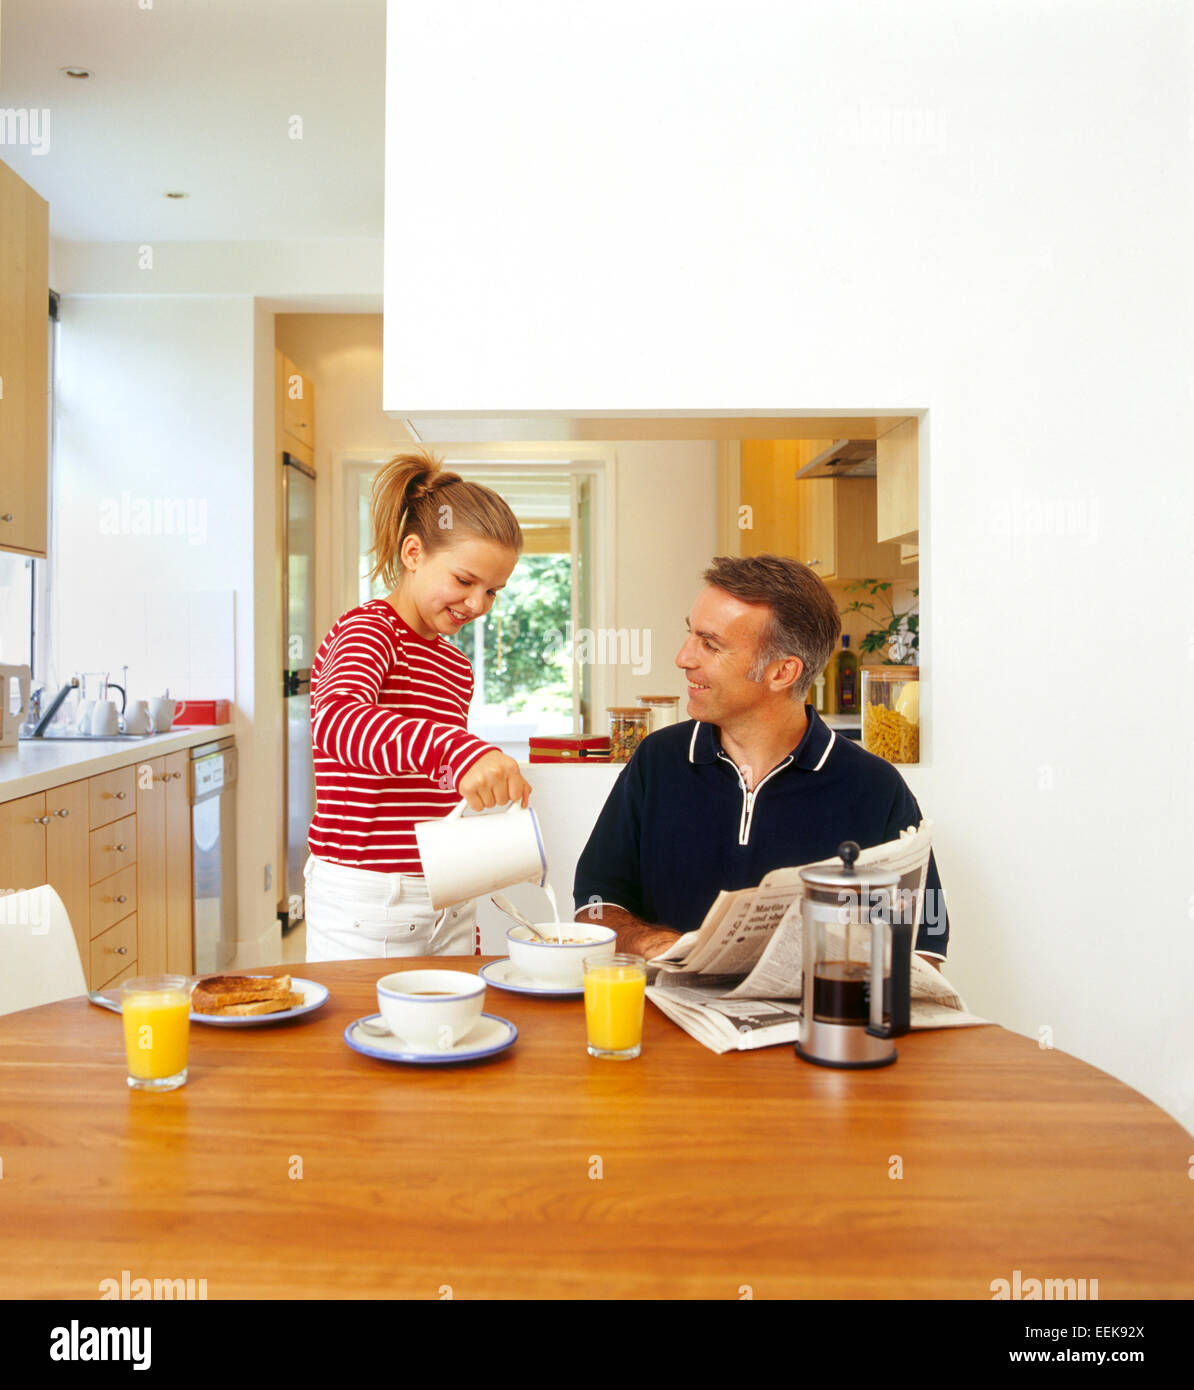 Père et fille prenant le petit déjeuner avec eux, dans la cuisine, collage, tout en riant fille verse lait sur les céréales de son père Banque D'Images